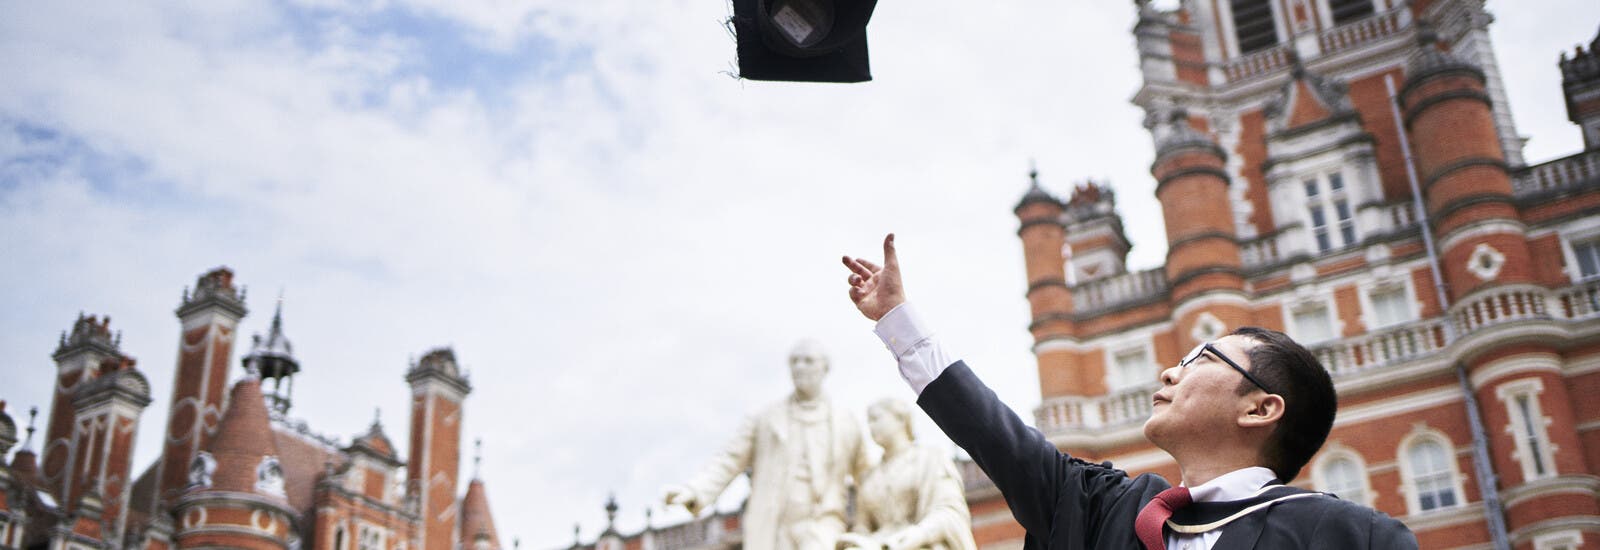 Graduate throwing cap in air